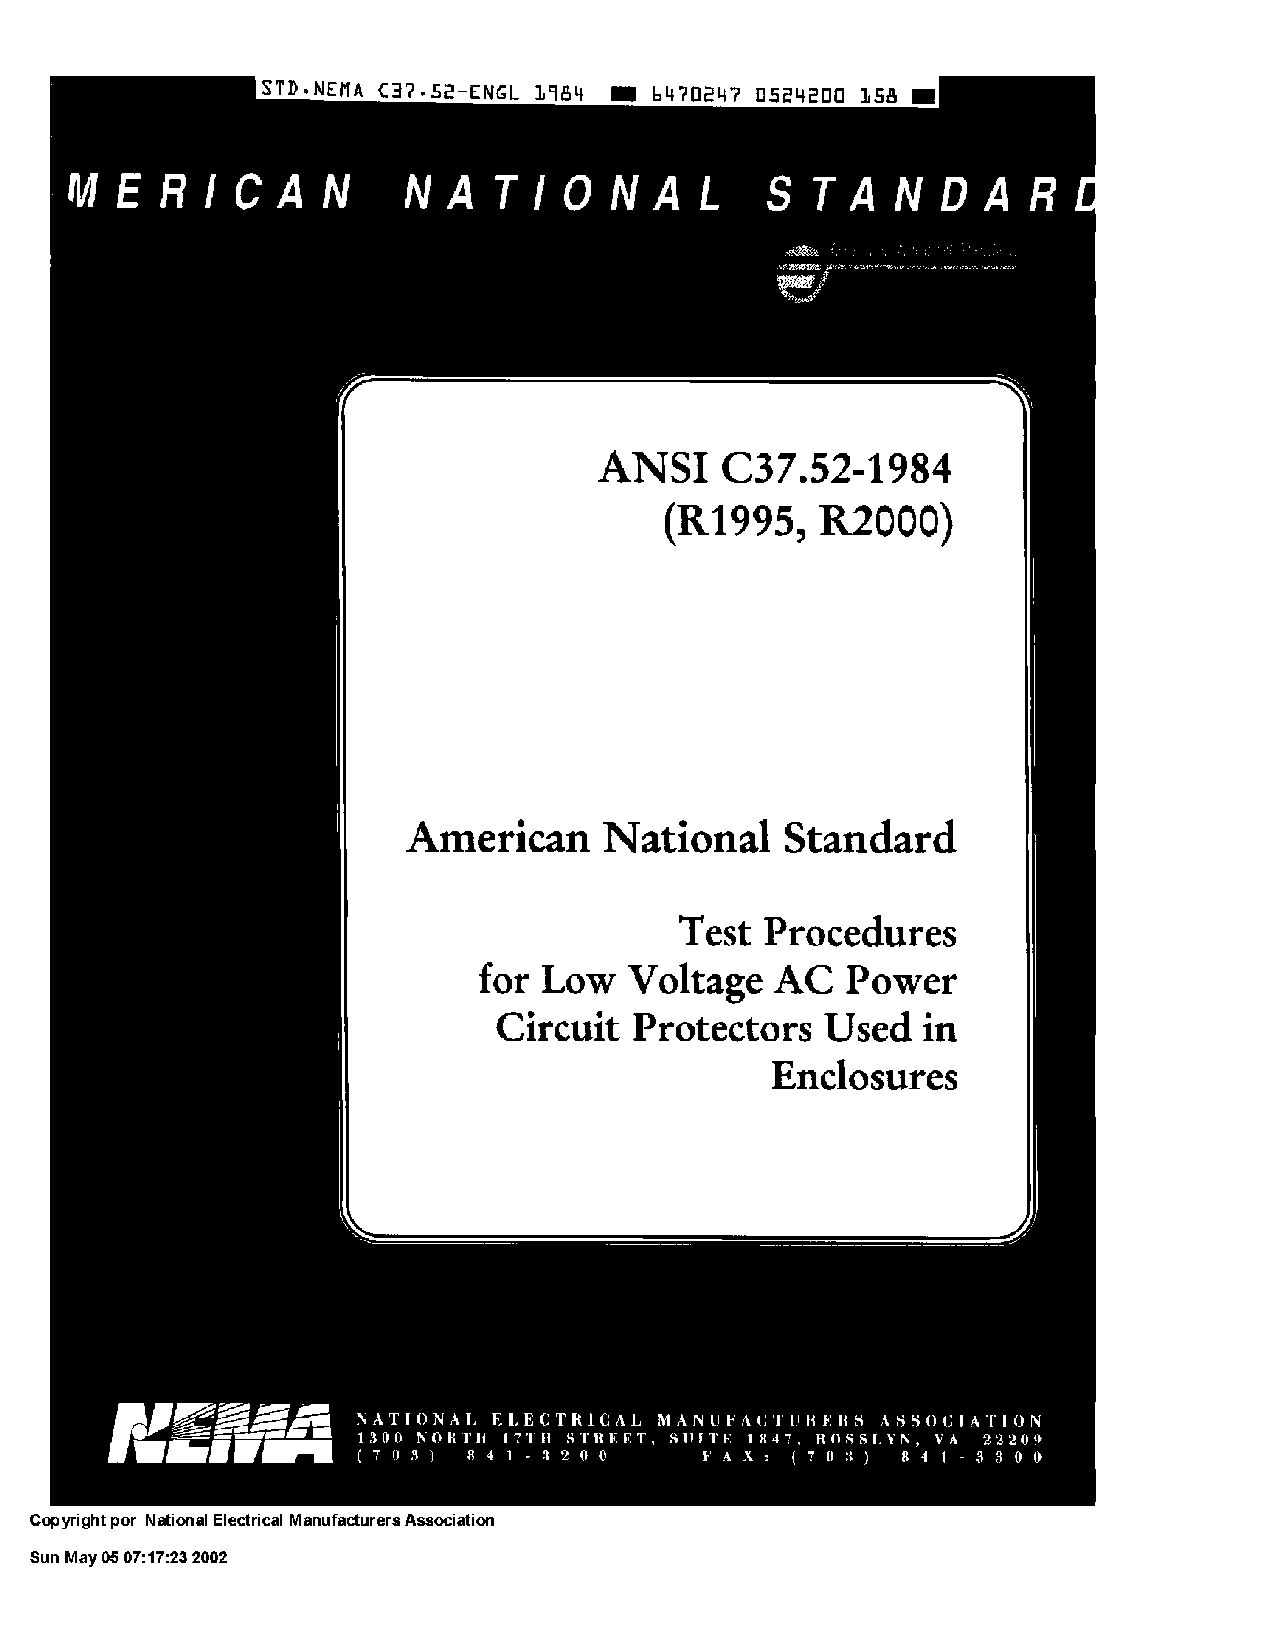 ANSI C37.52-1984(R2000)